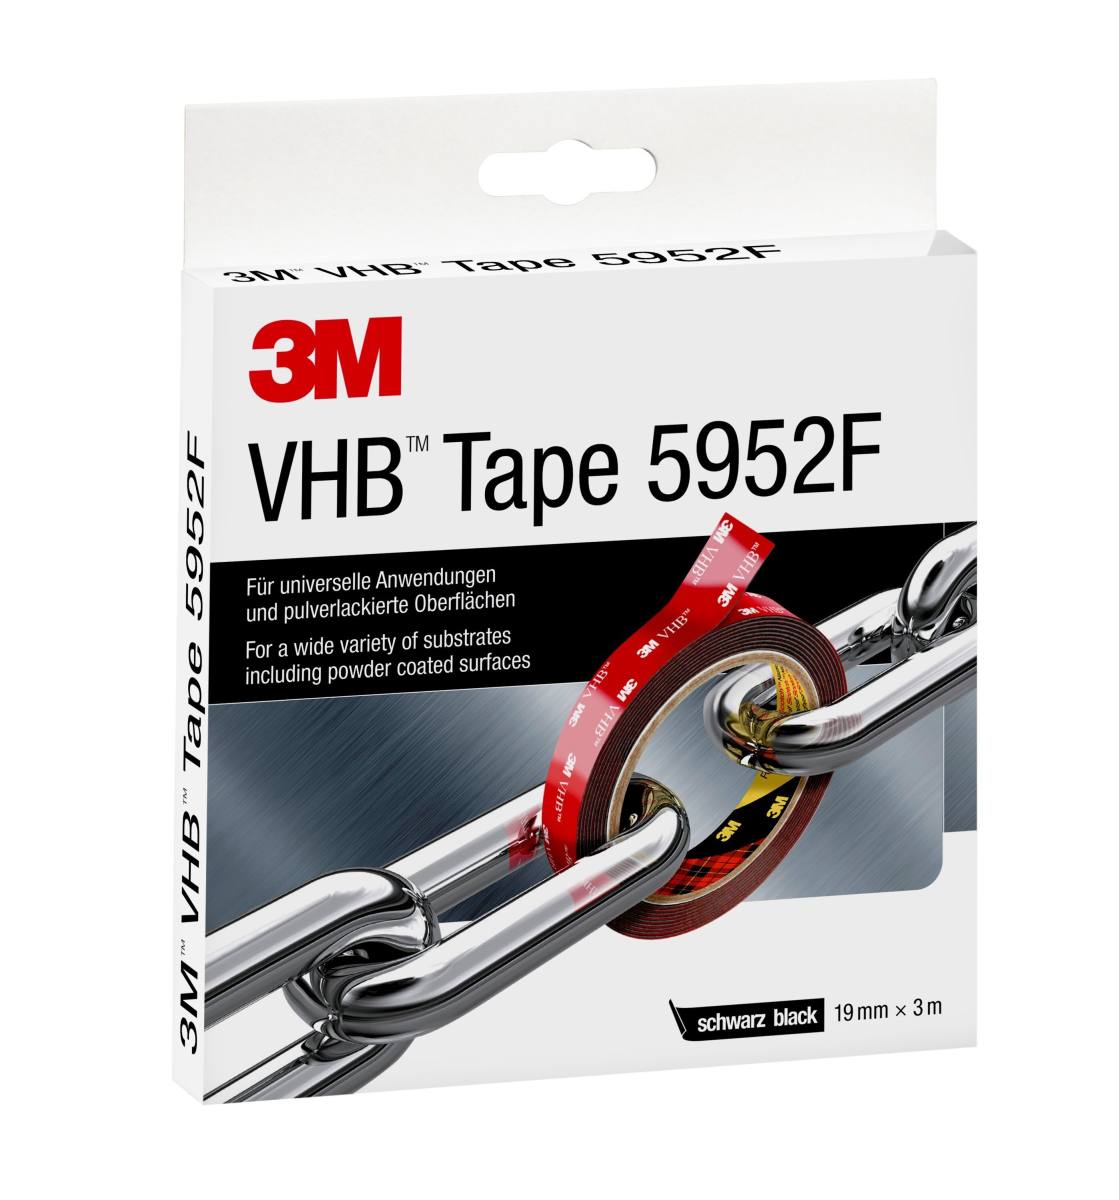 3M VHB adhesive tape 5952F, black, 19 mm x 3 m, 1.1 mm